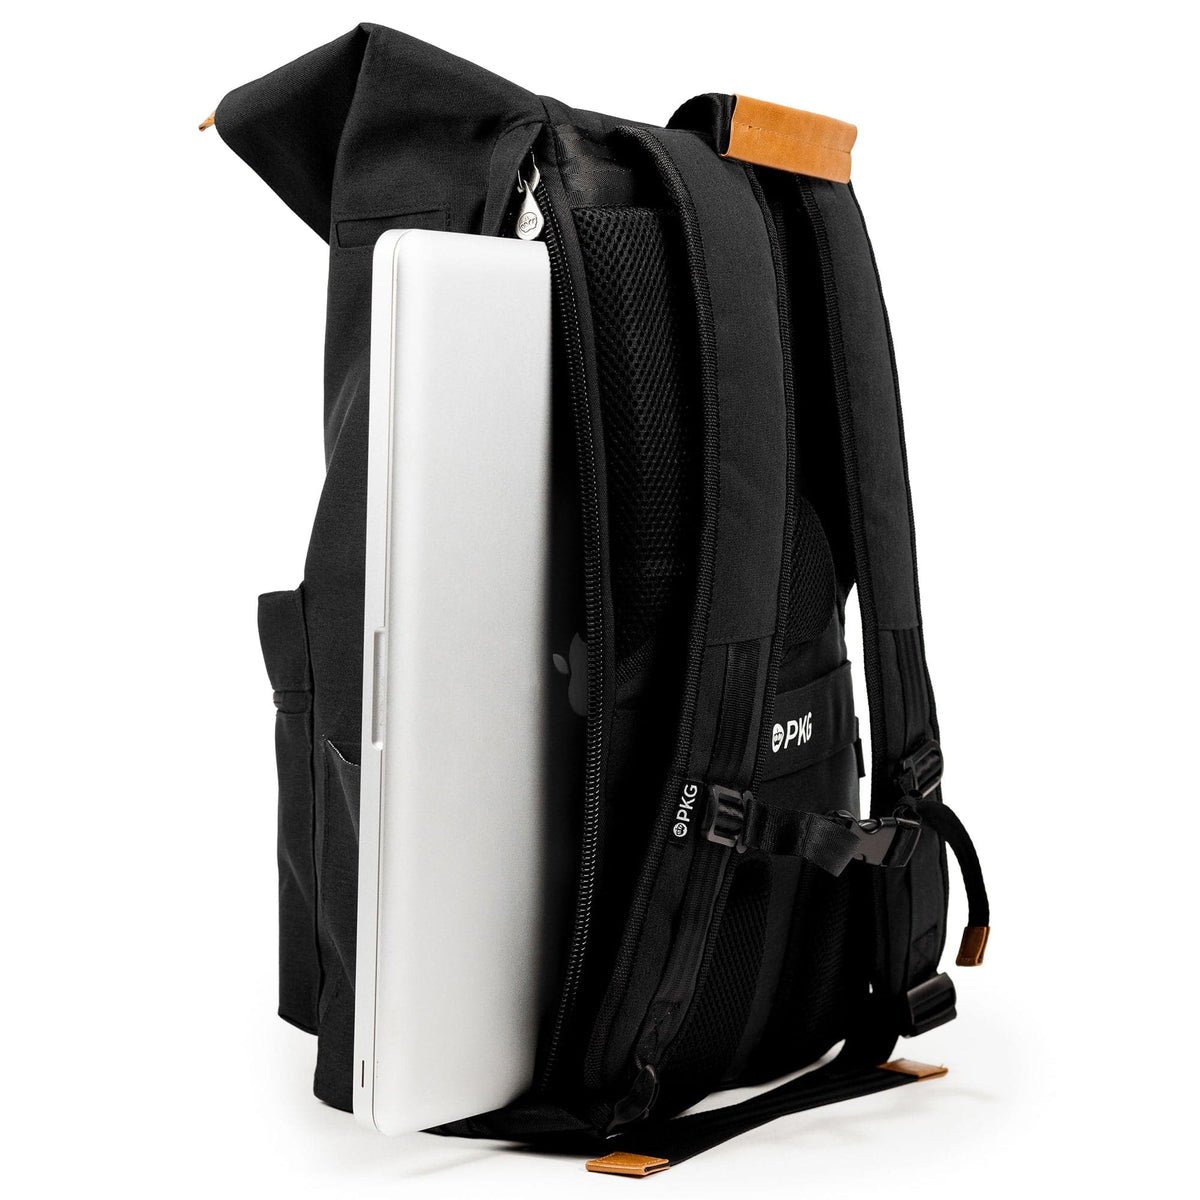 PKG Brighton 15" Fold-Over Backpack